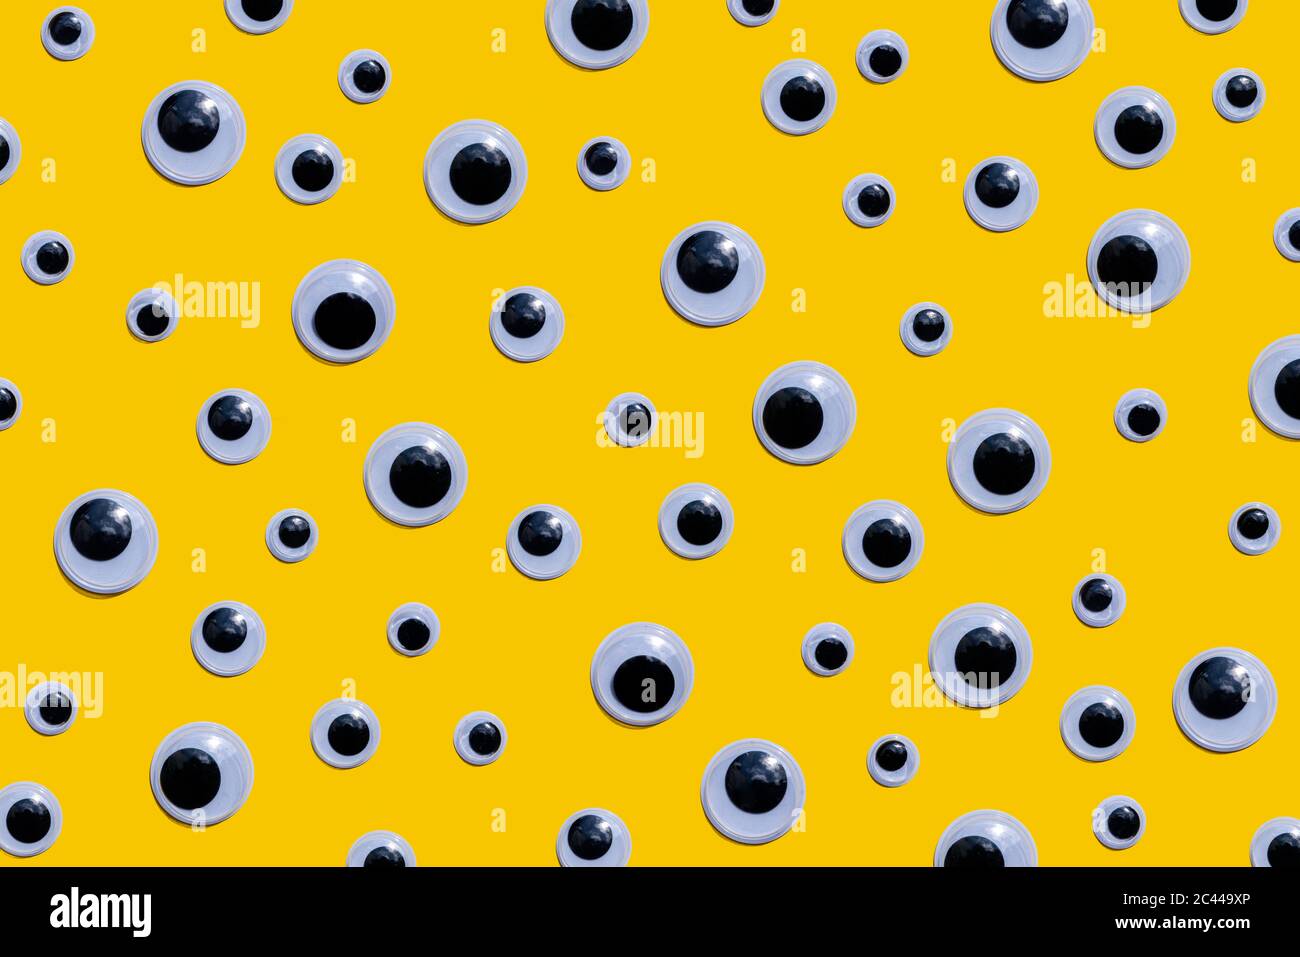 yellow eye wallpaper